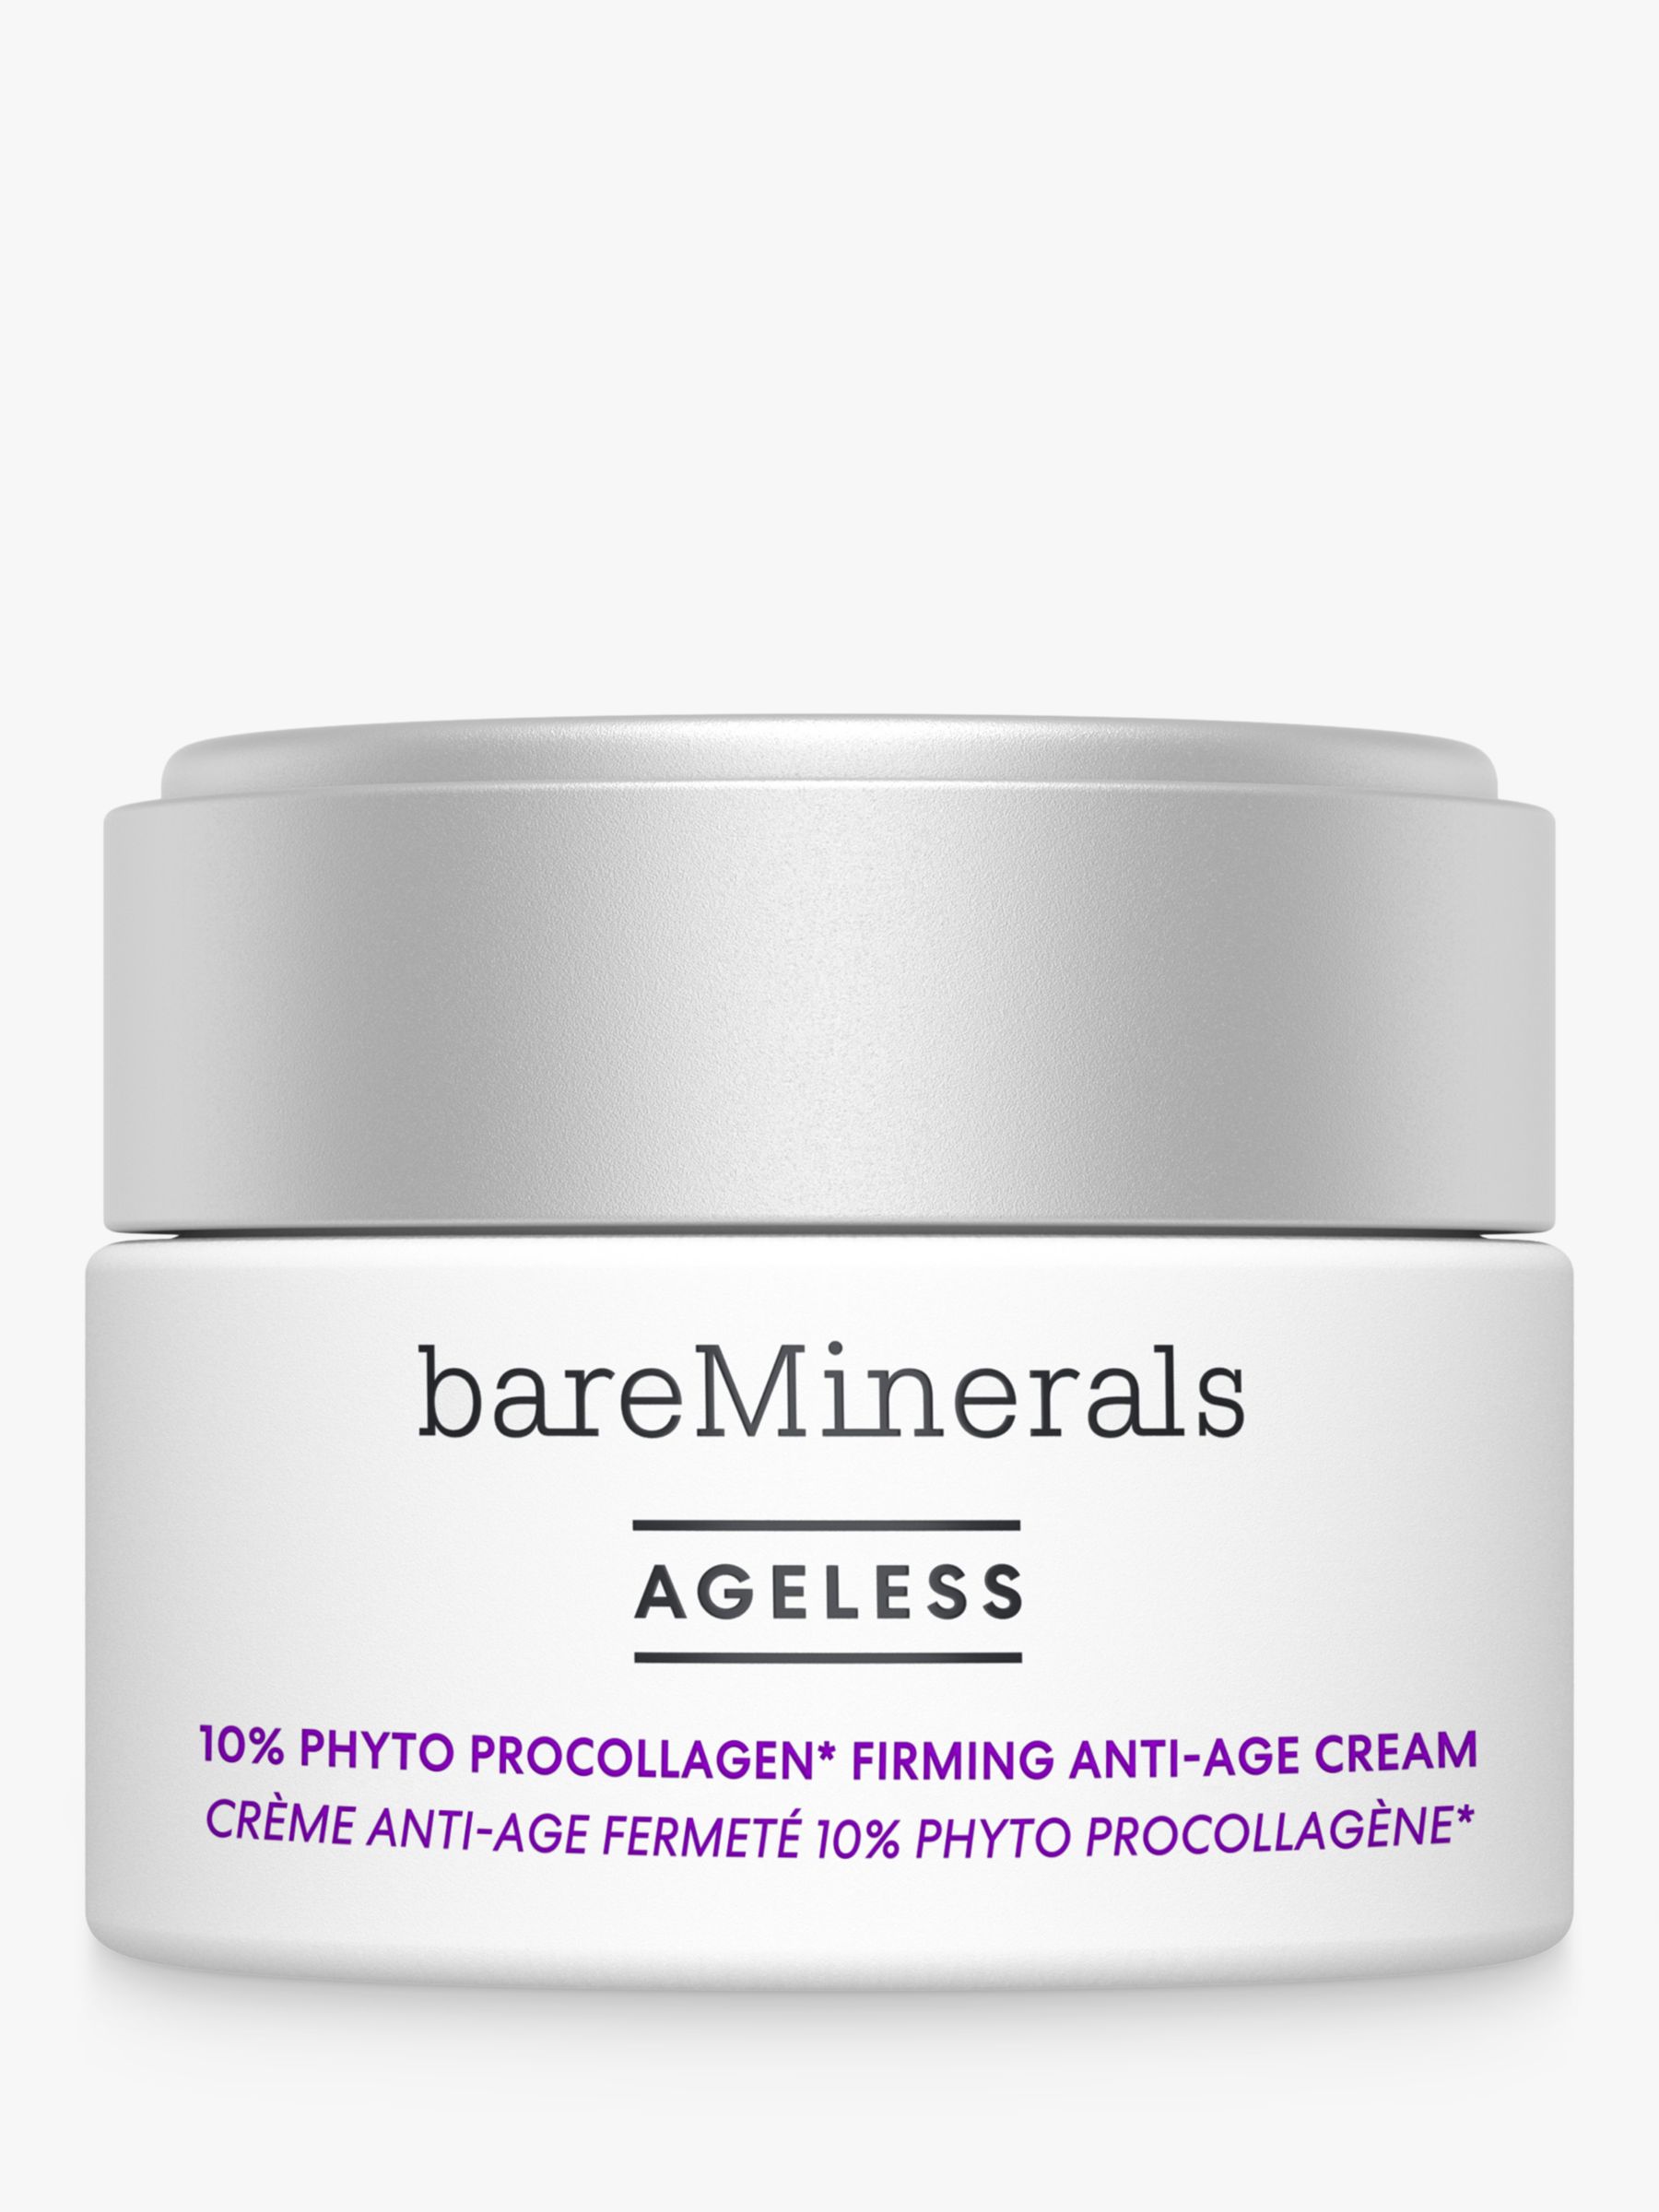 bareMinerals AGELESS 10% Phyto ProCollagen Firming Anti-Age Cream, 50ml